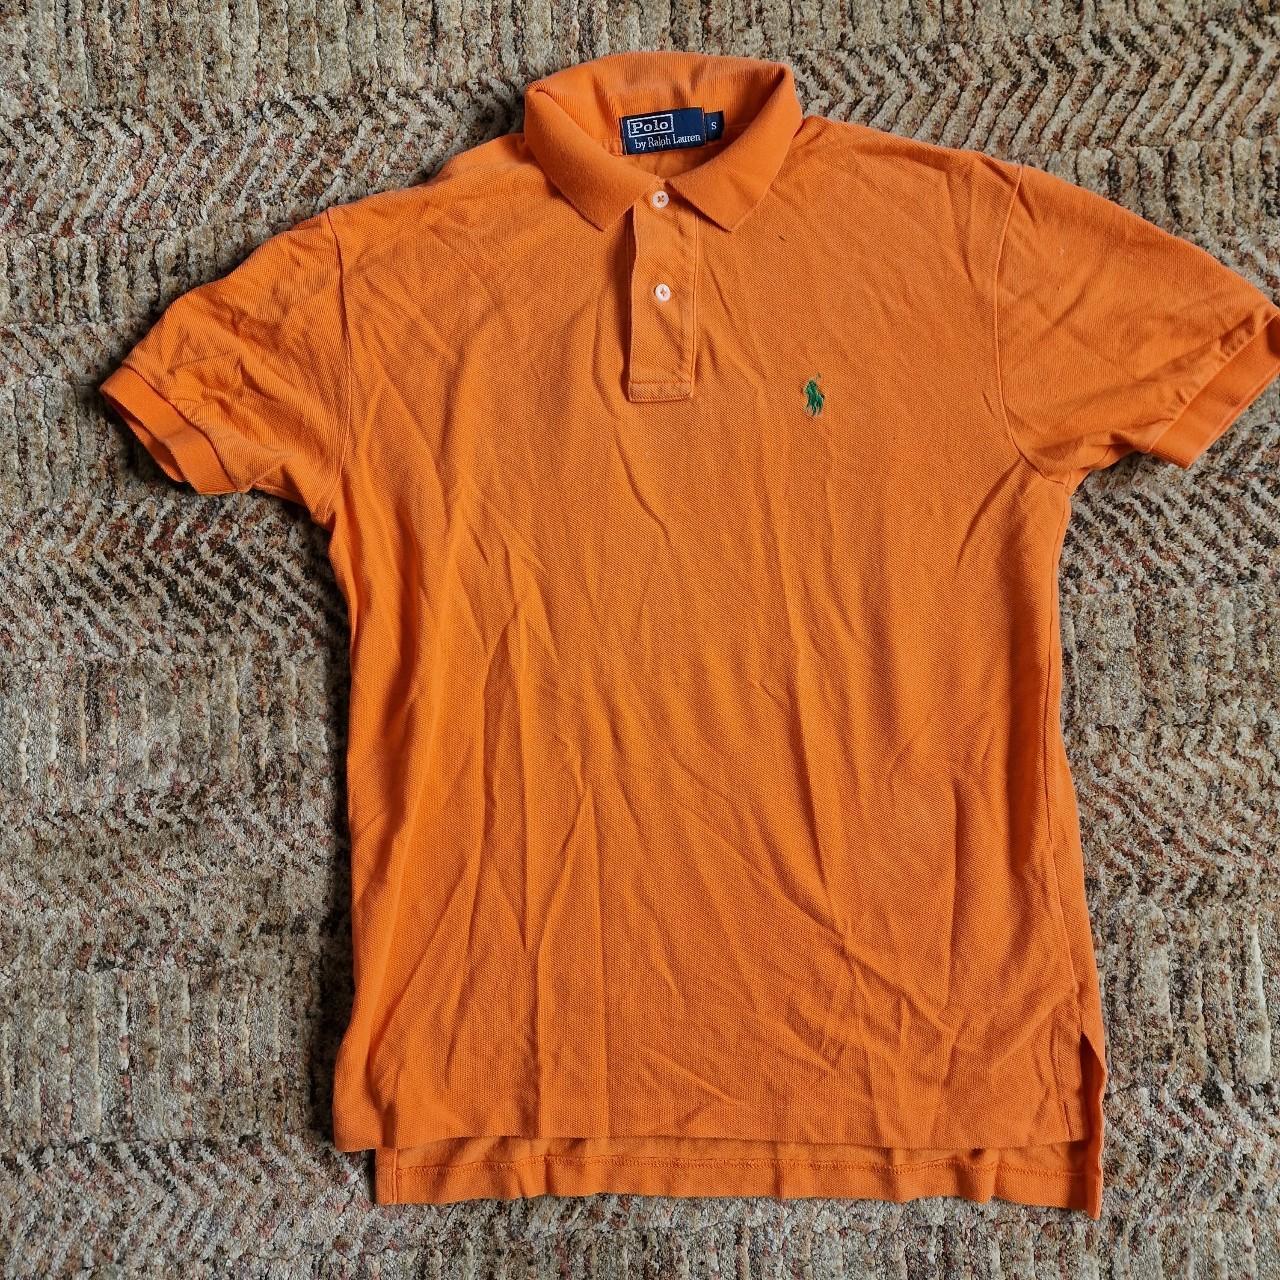 Ralph Lauren orange small polo shirt Never worn but... - Depop